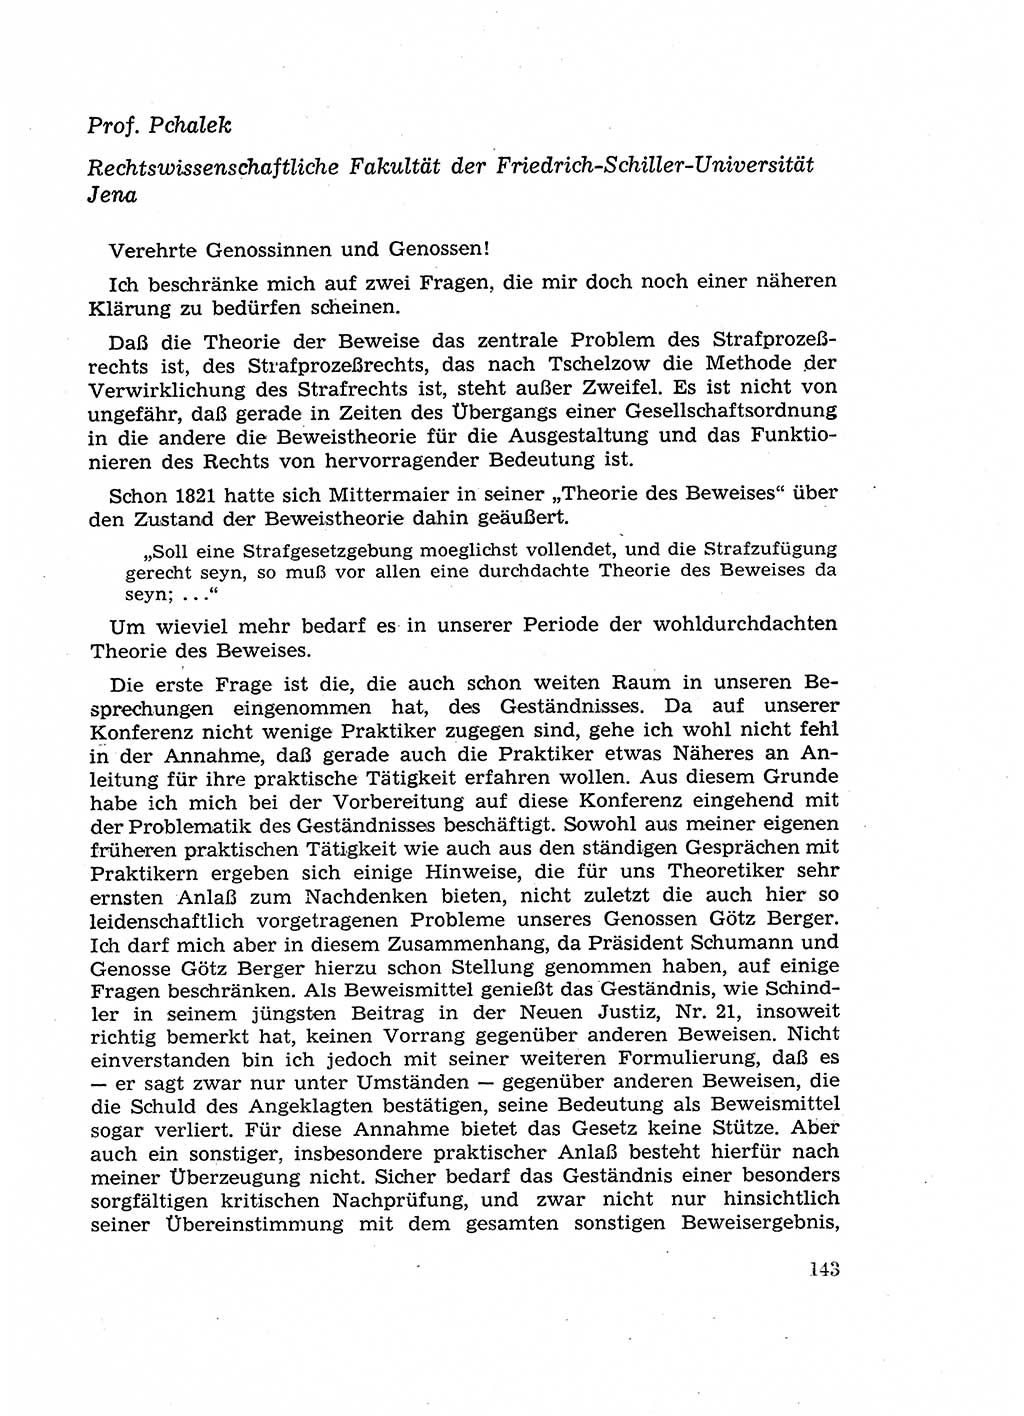 Fragen des Beweisrechts im Strafprozess [Deutsche Demokratische Republik (DDR)] 1956, Seite 143 (Fr. BeweisR. Str.-Proz. DDR 1956, S. 143)